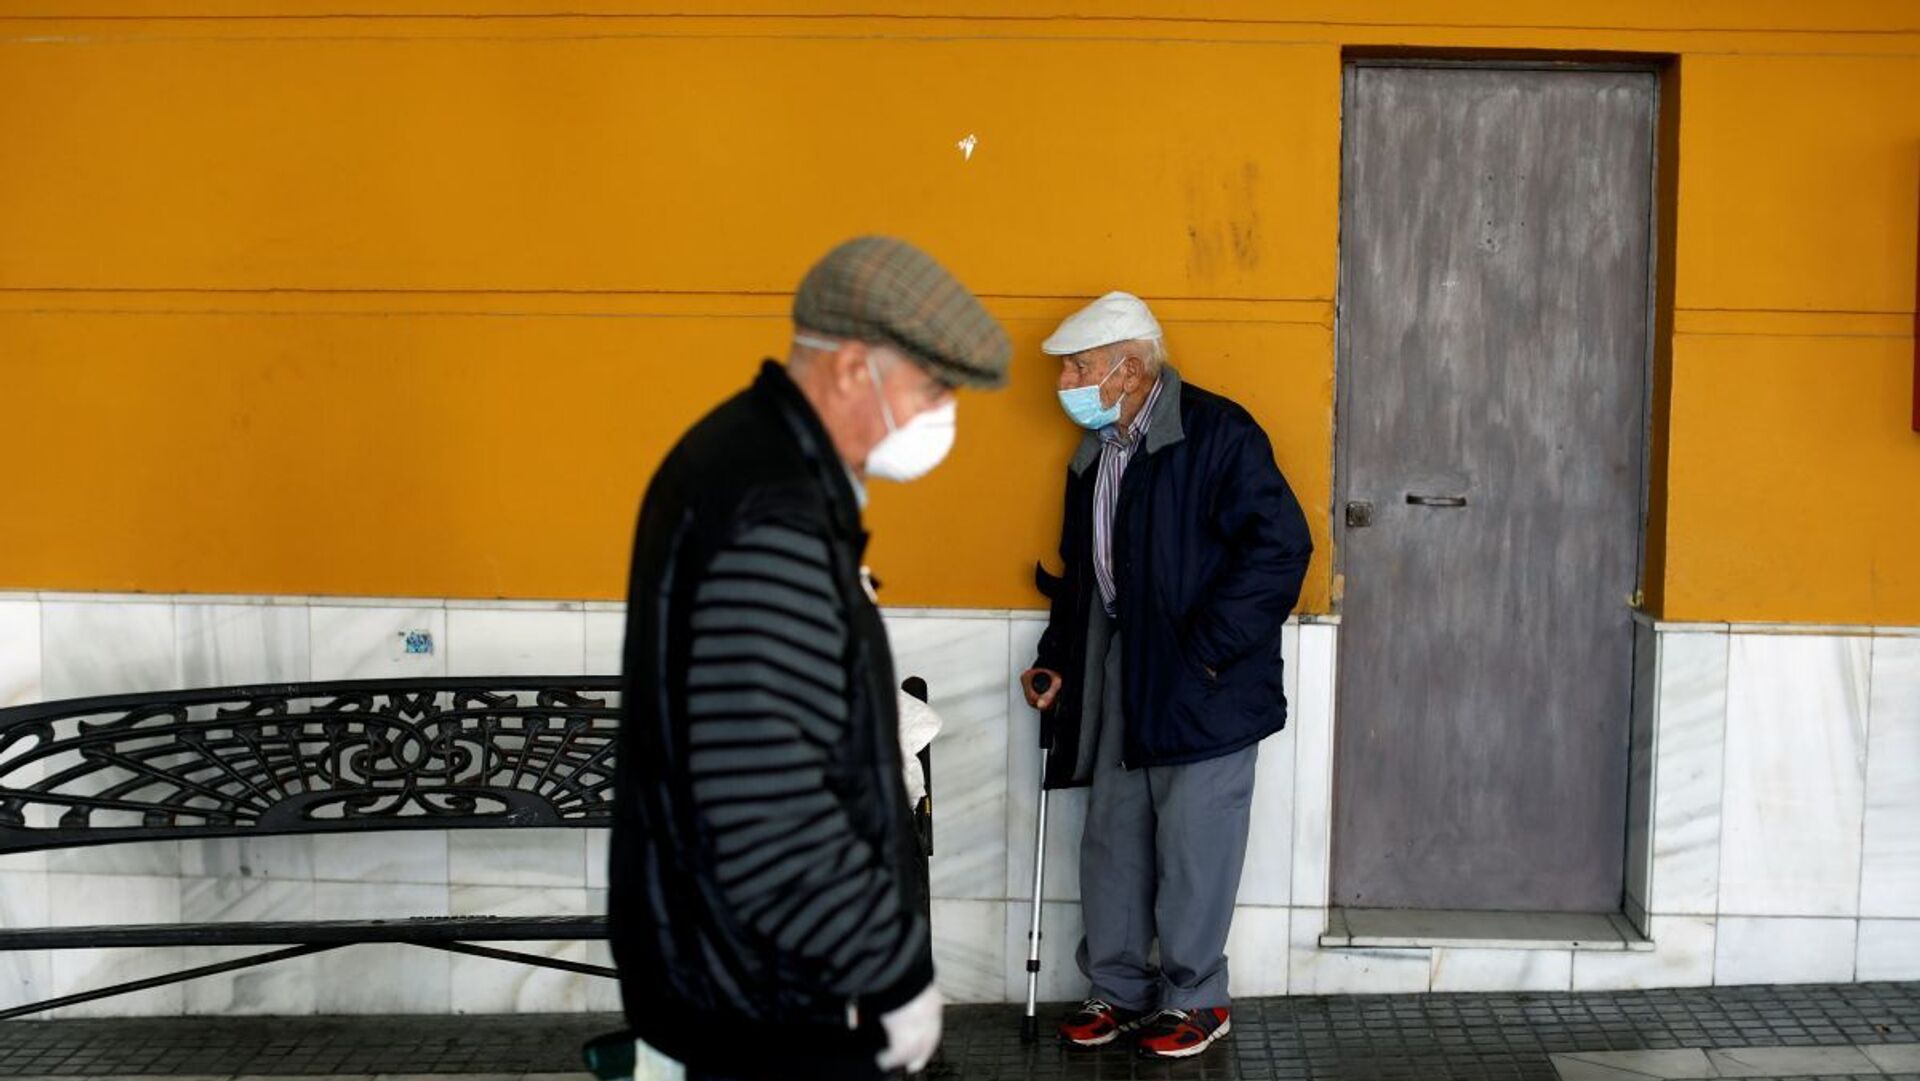 Пожилые люди в масках, фото из архива - Sputnik Азербайджан, 1920, 06.12.2021